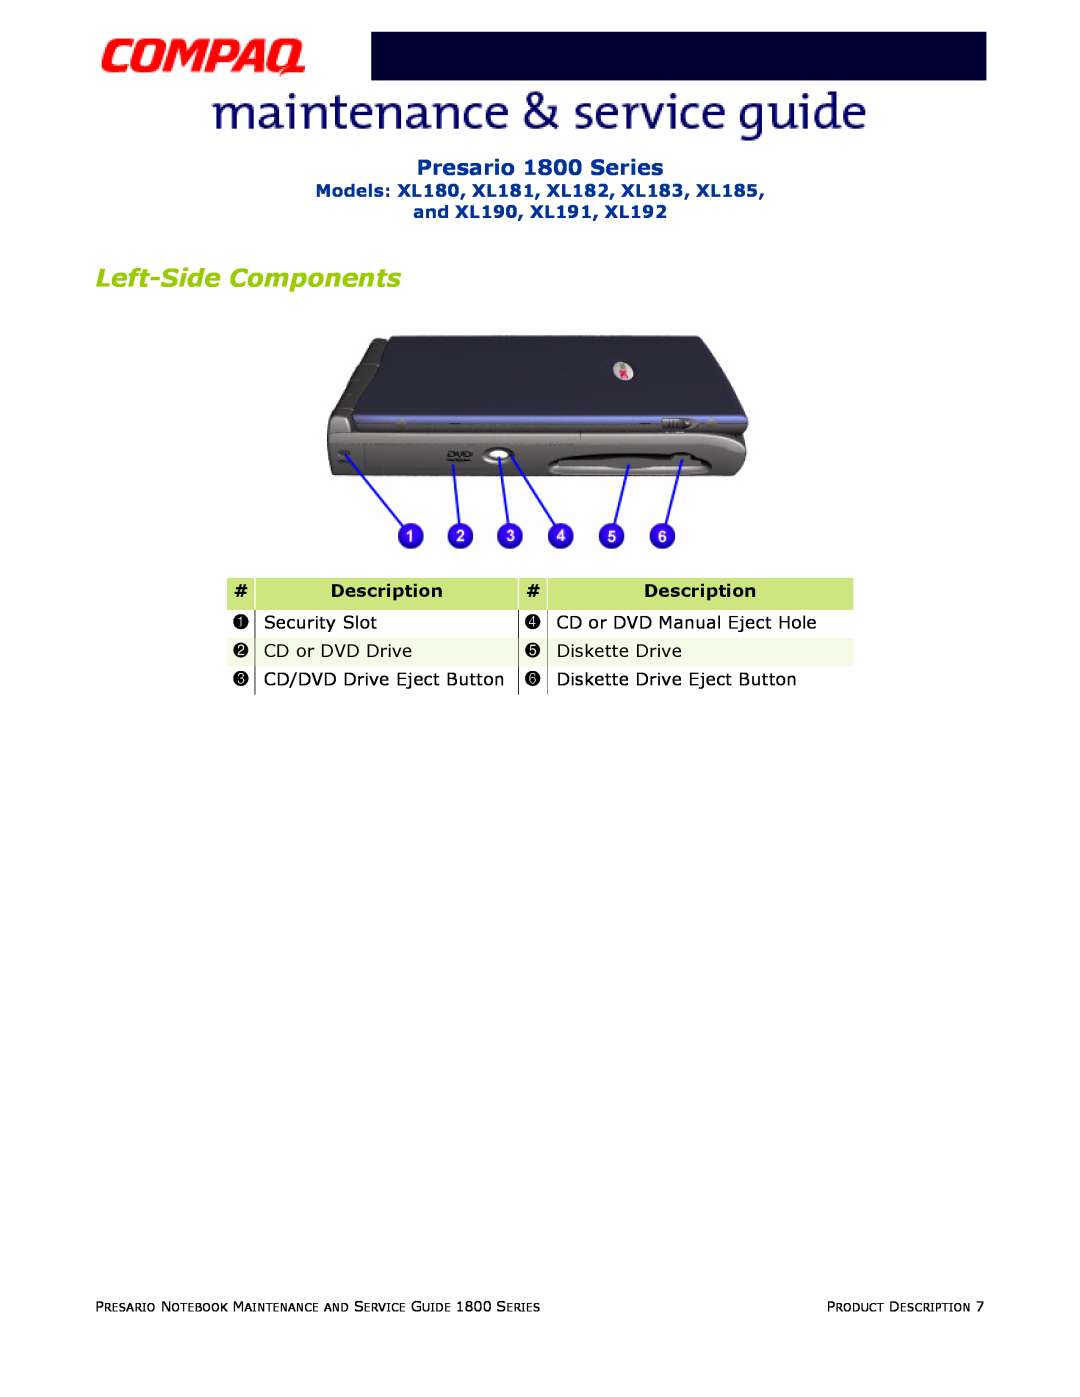 Compaq Left-Side Components, Presario 1800 Series, Models XL180, XL181, XL182, XL183, XL185 and XL190, XL191, XL192 